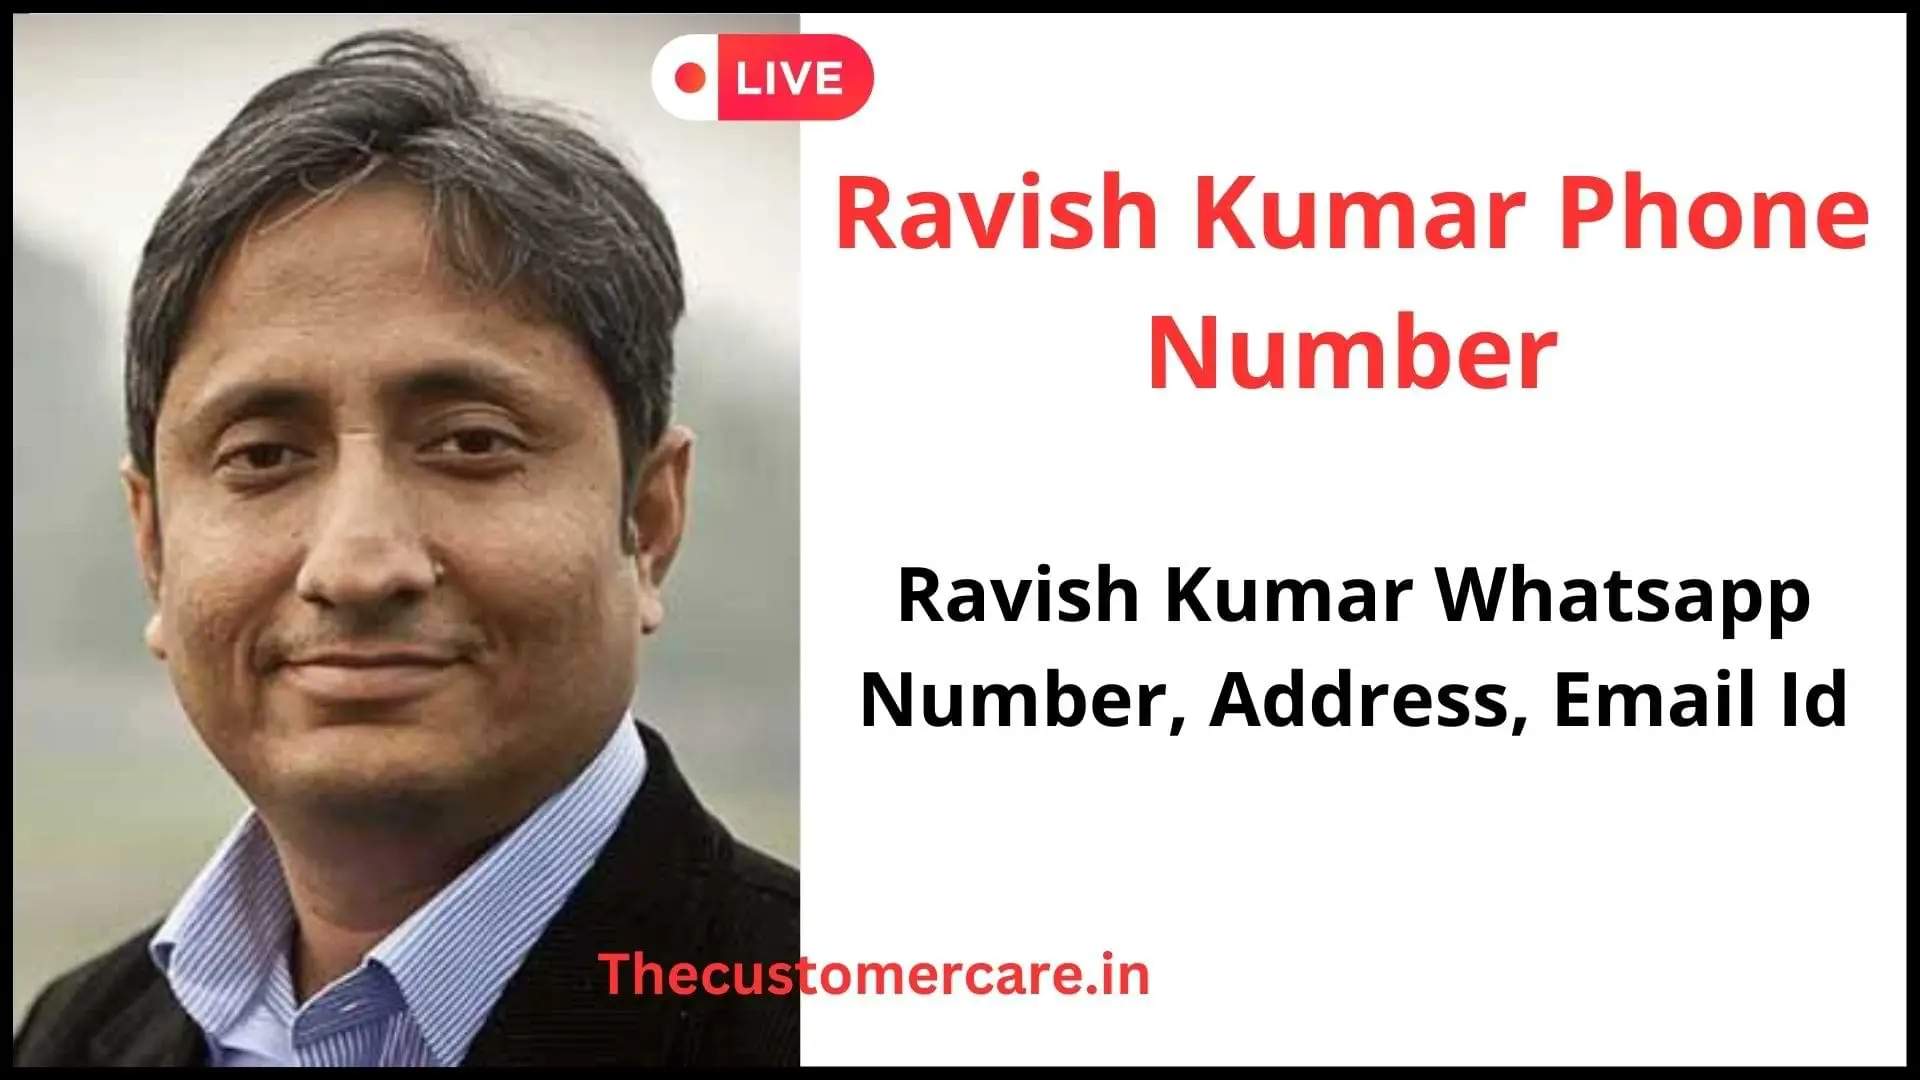 Ravish Kumar Phone Number